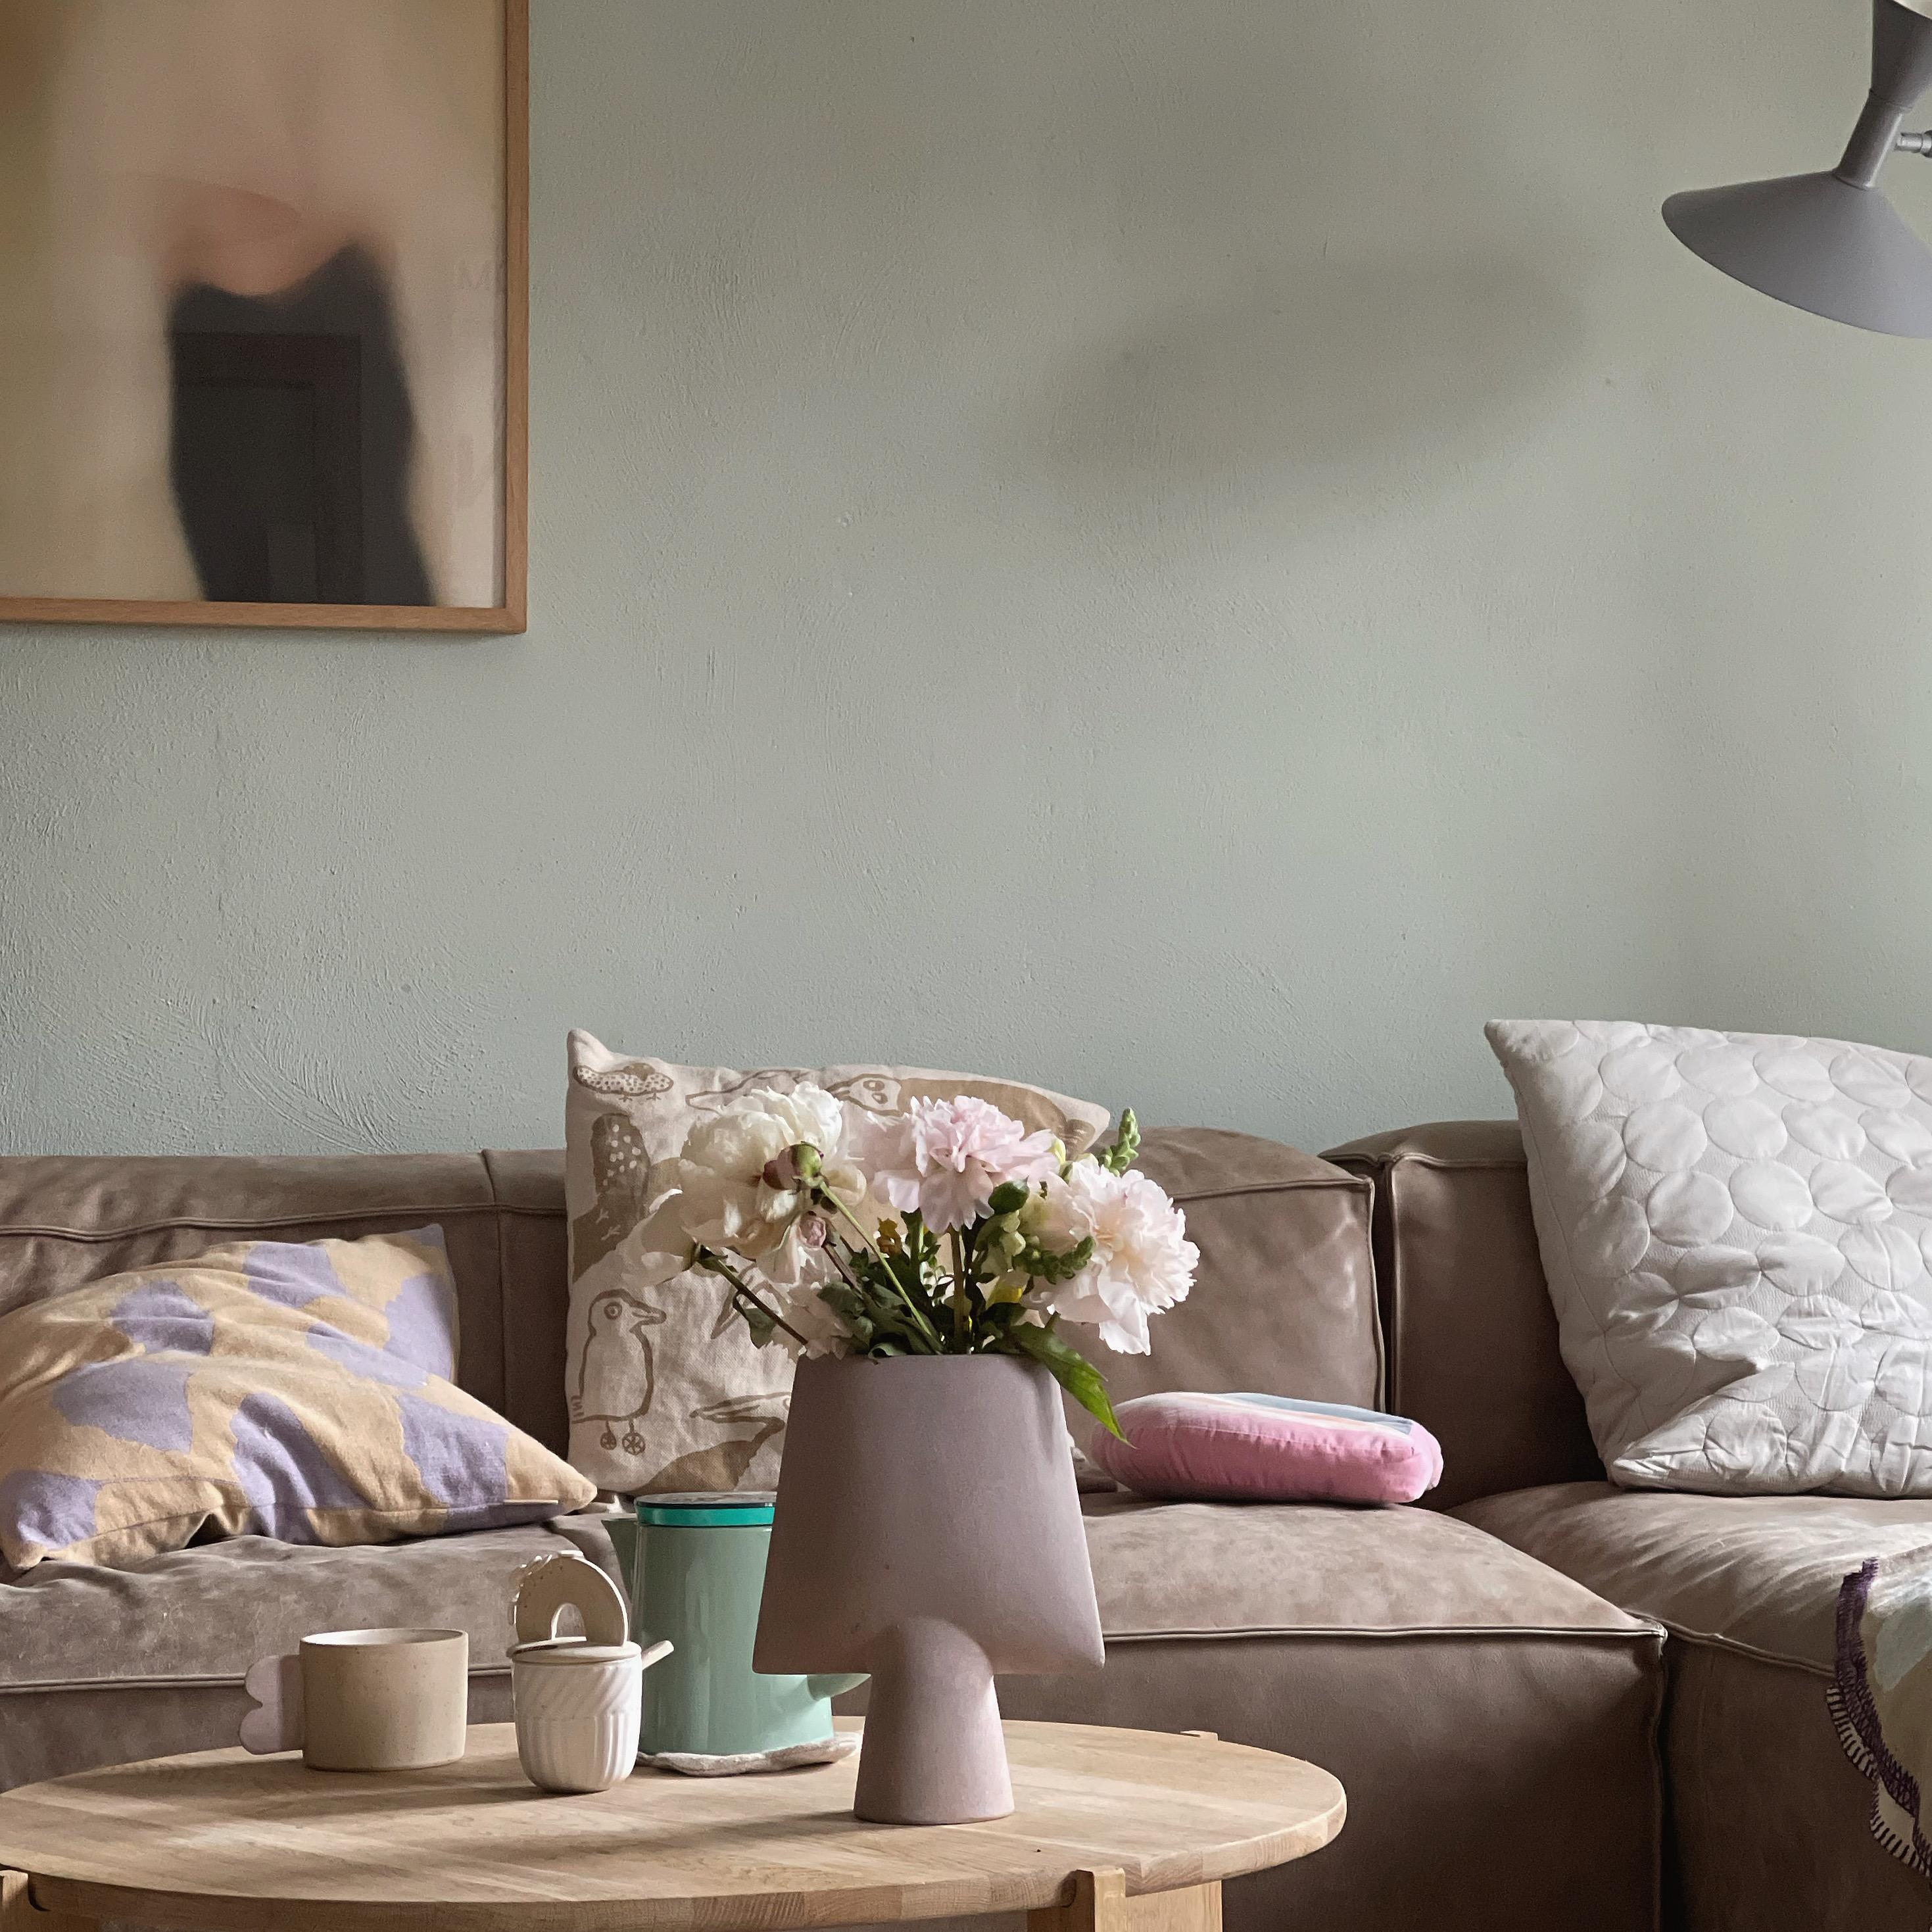 #livingroom #homedecor #interior#decoration#altbau #homestory#blumen#wohnzimmer #couchstyle#scandinavisch#living#cozy